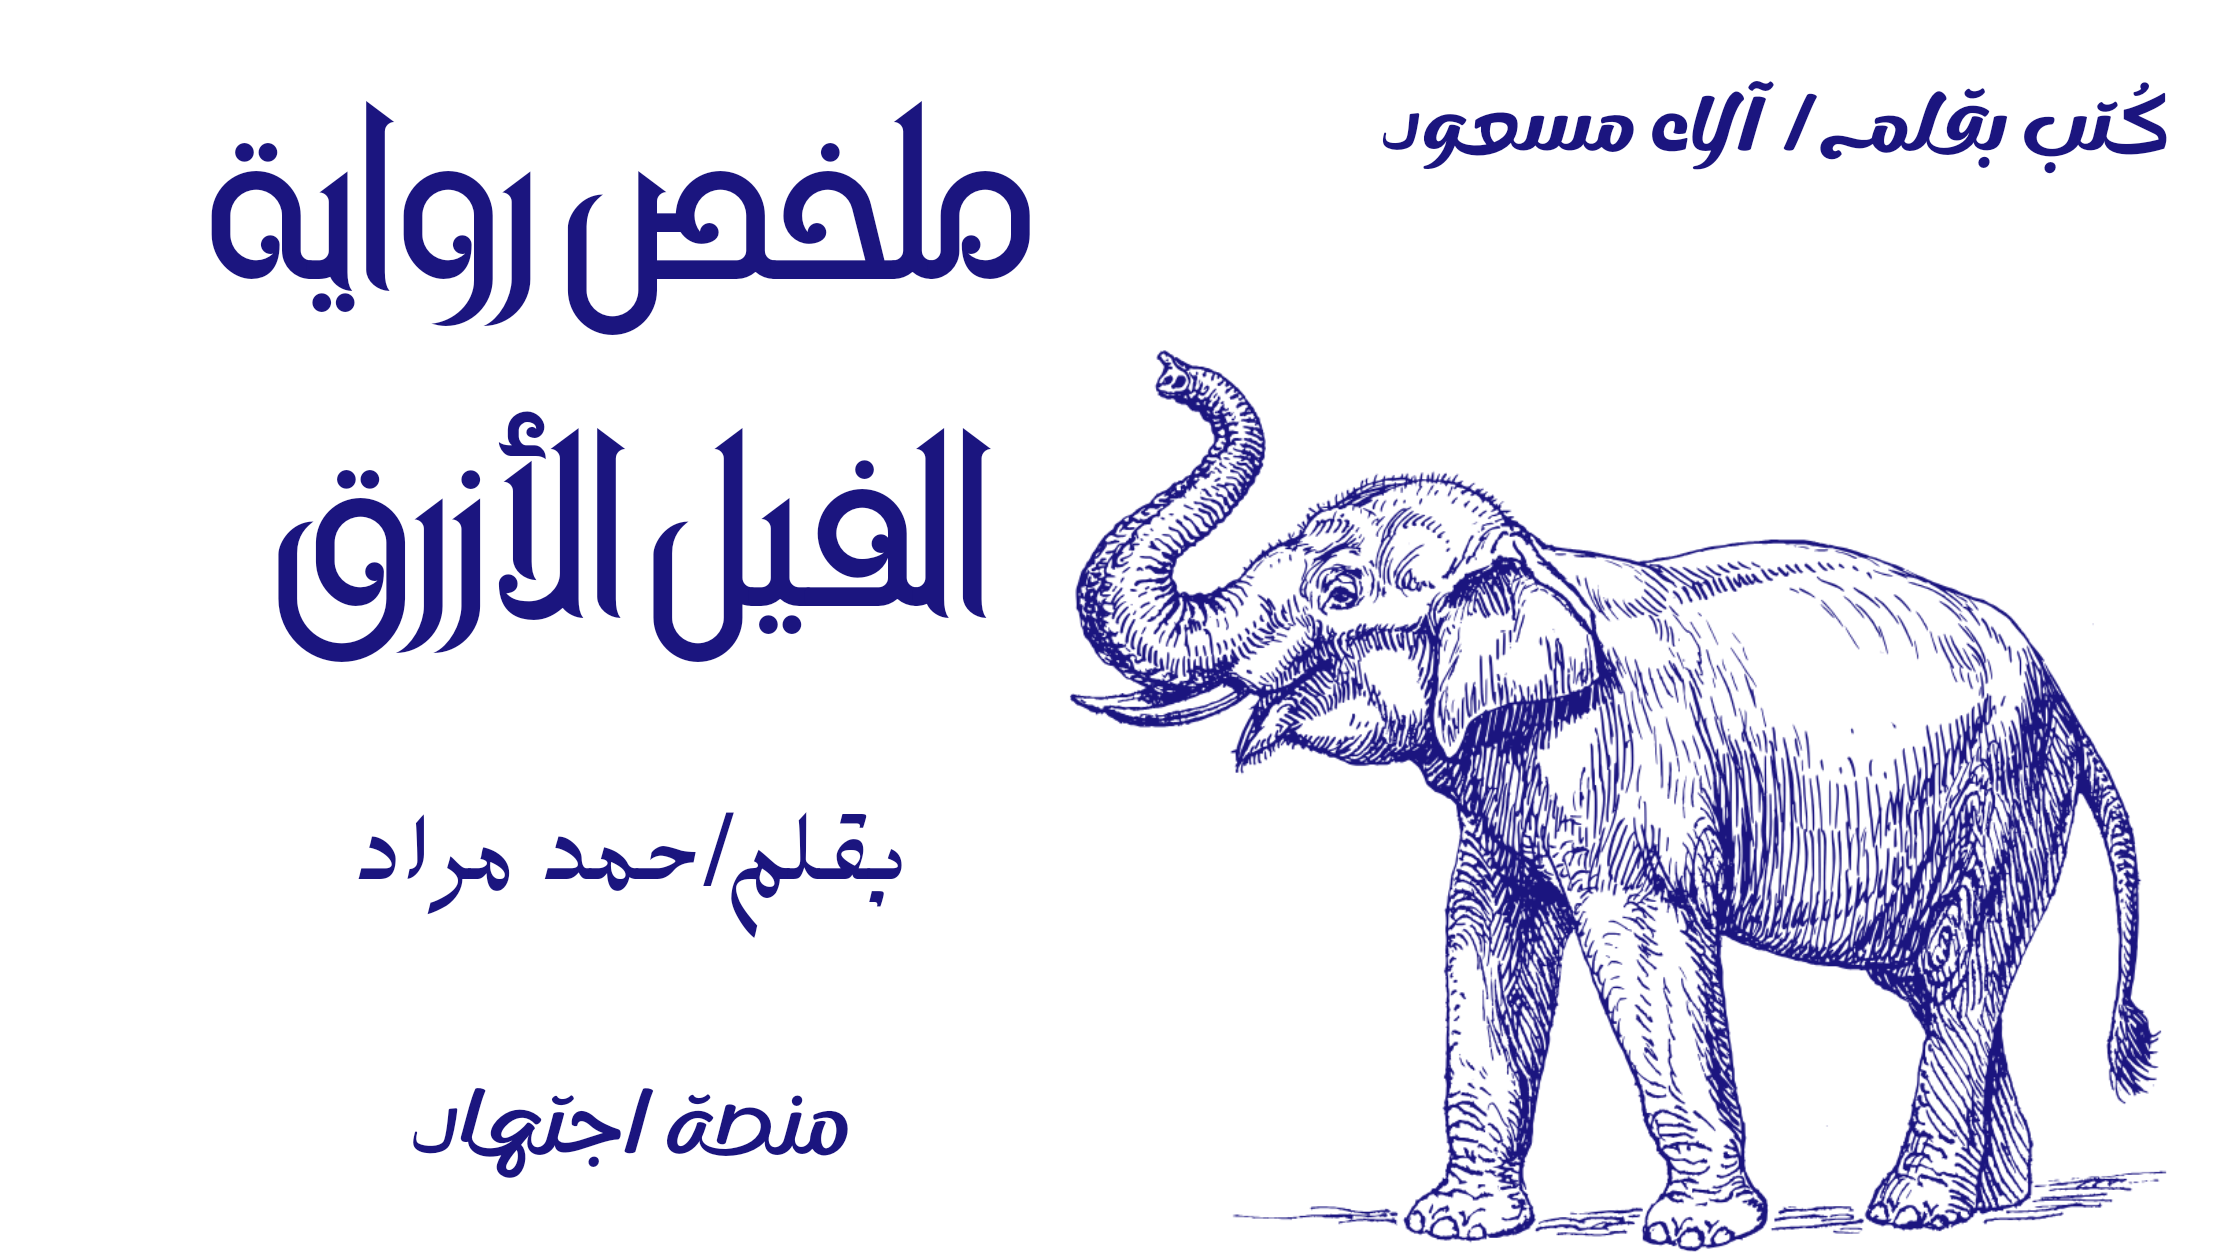 ملخص رواية الفيل الأزرق | بقلم أحمد مراد